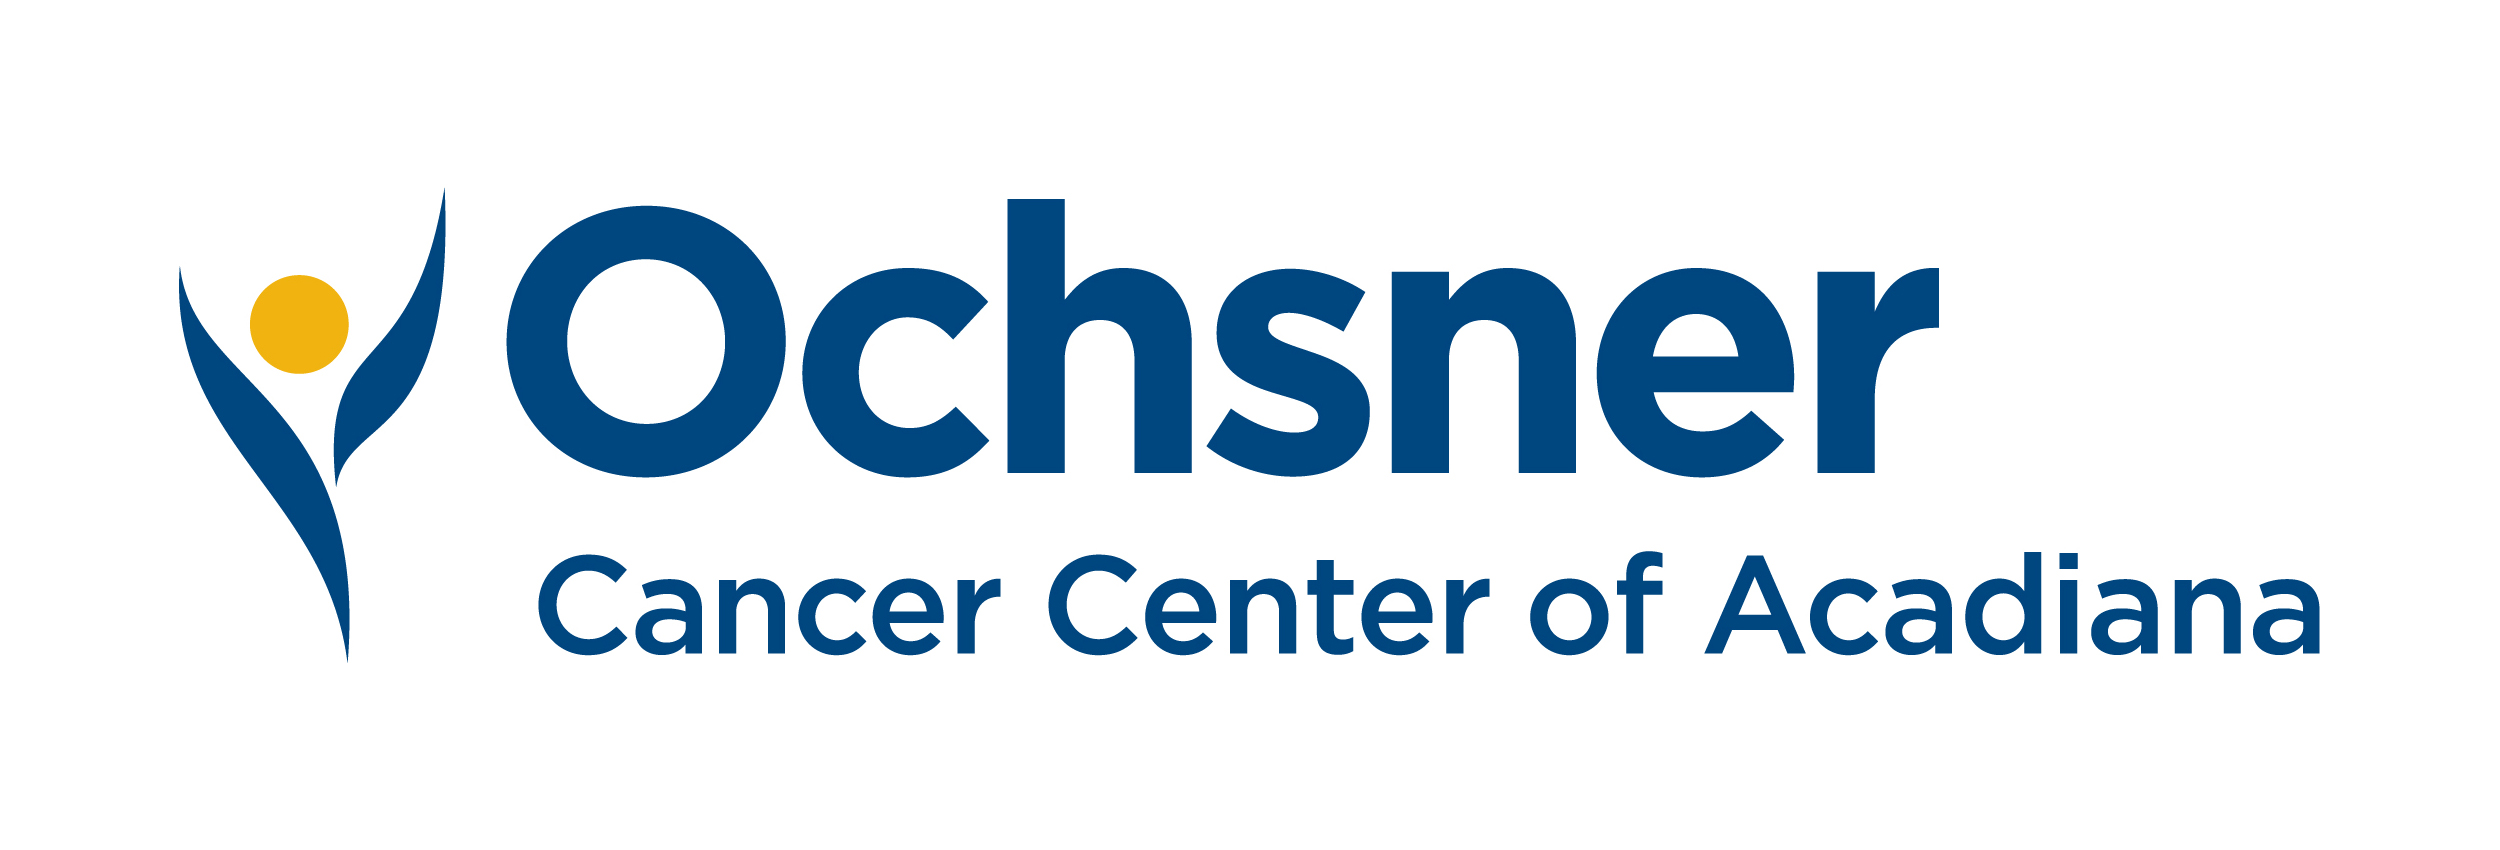 MPCS - Ochsner Cancer Center of Acadiana